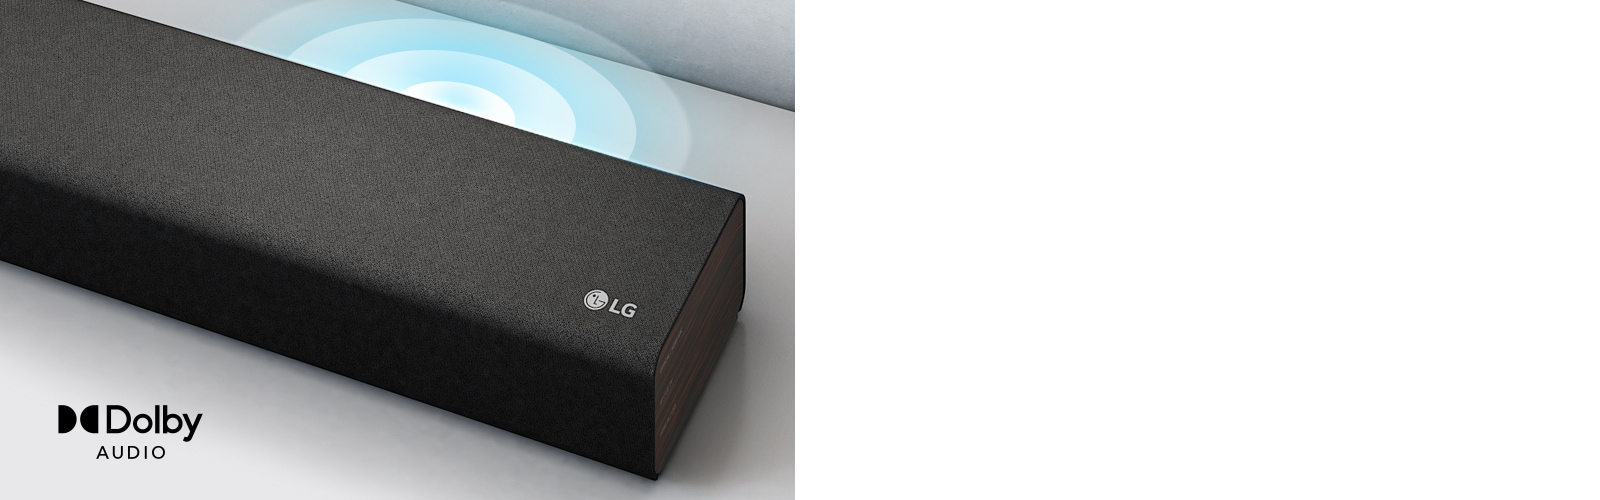 Саундбар LG на белой полке. Графическое изображение звука, исходящего из динамика. В левом углу саундбара показан логотип LG.